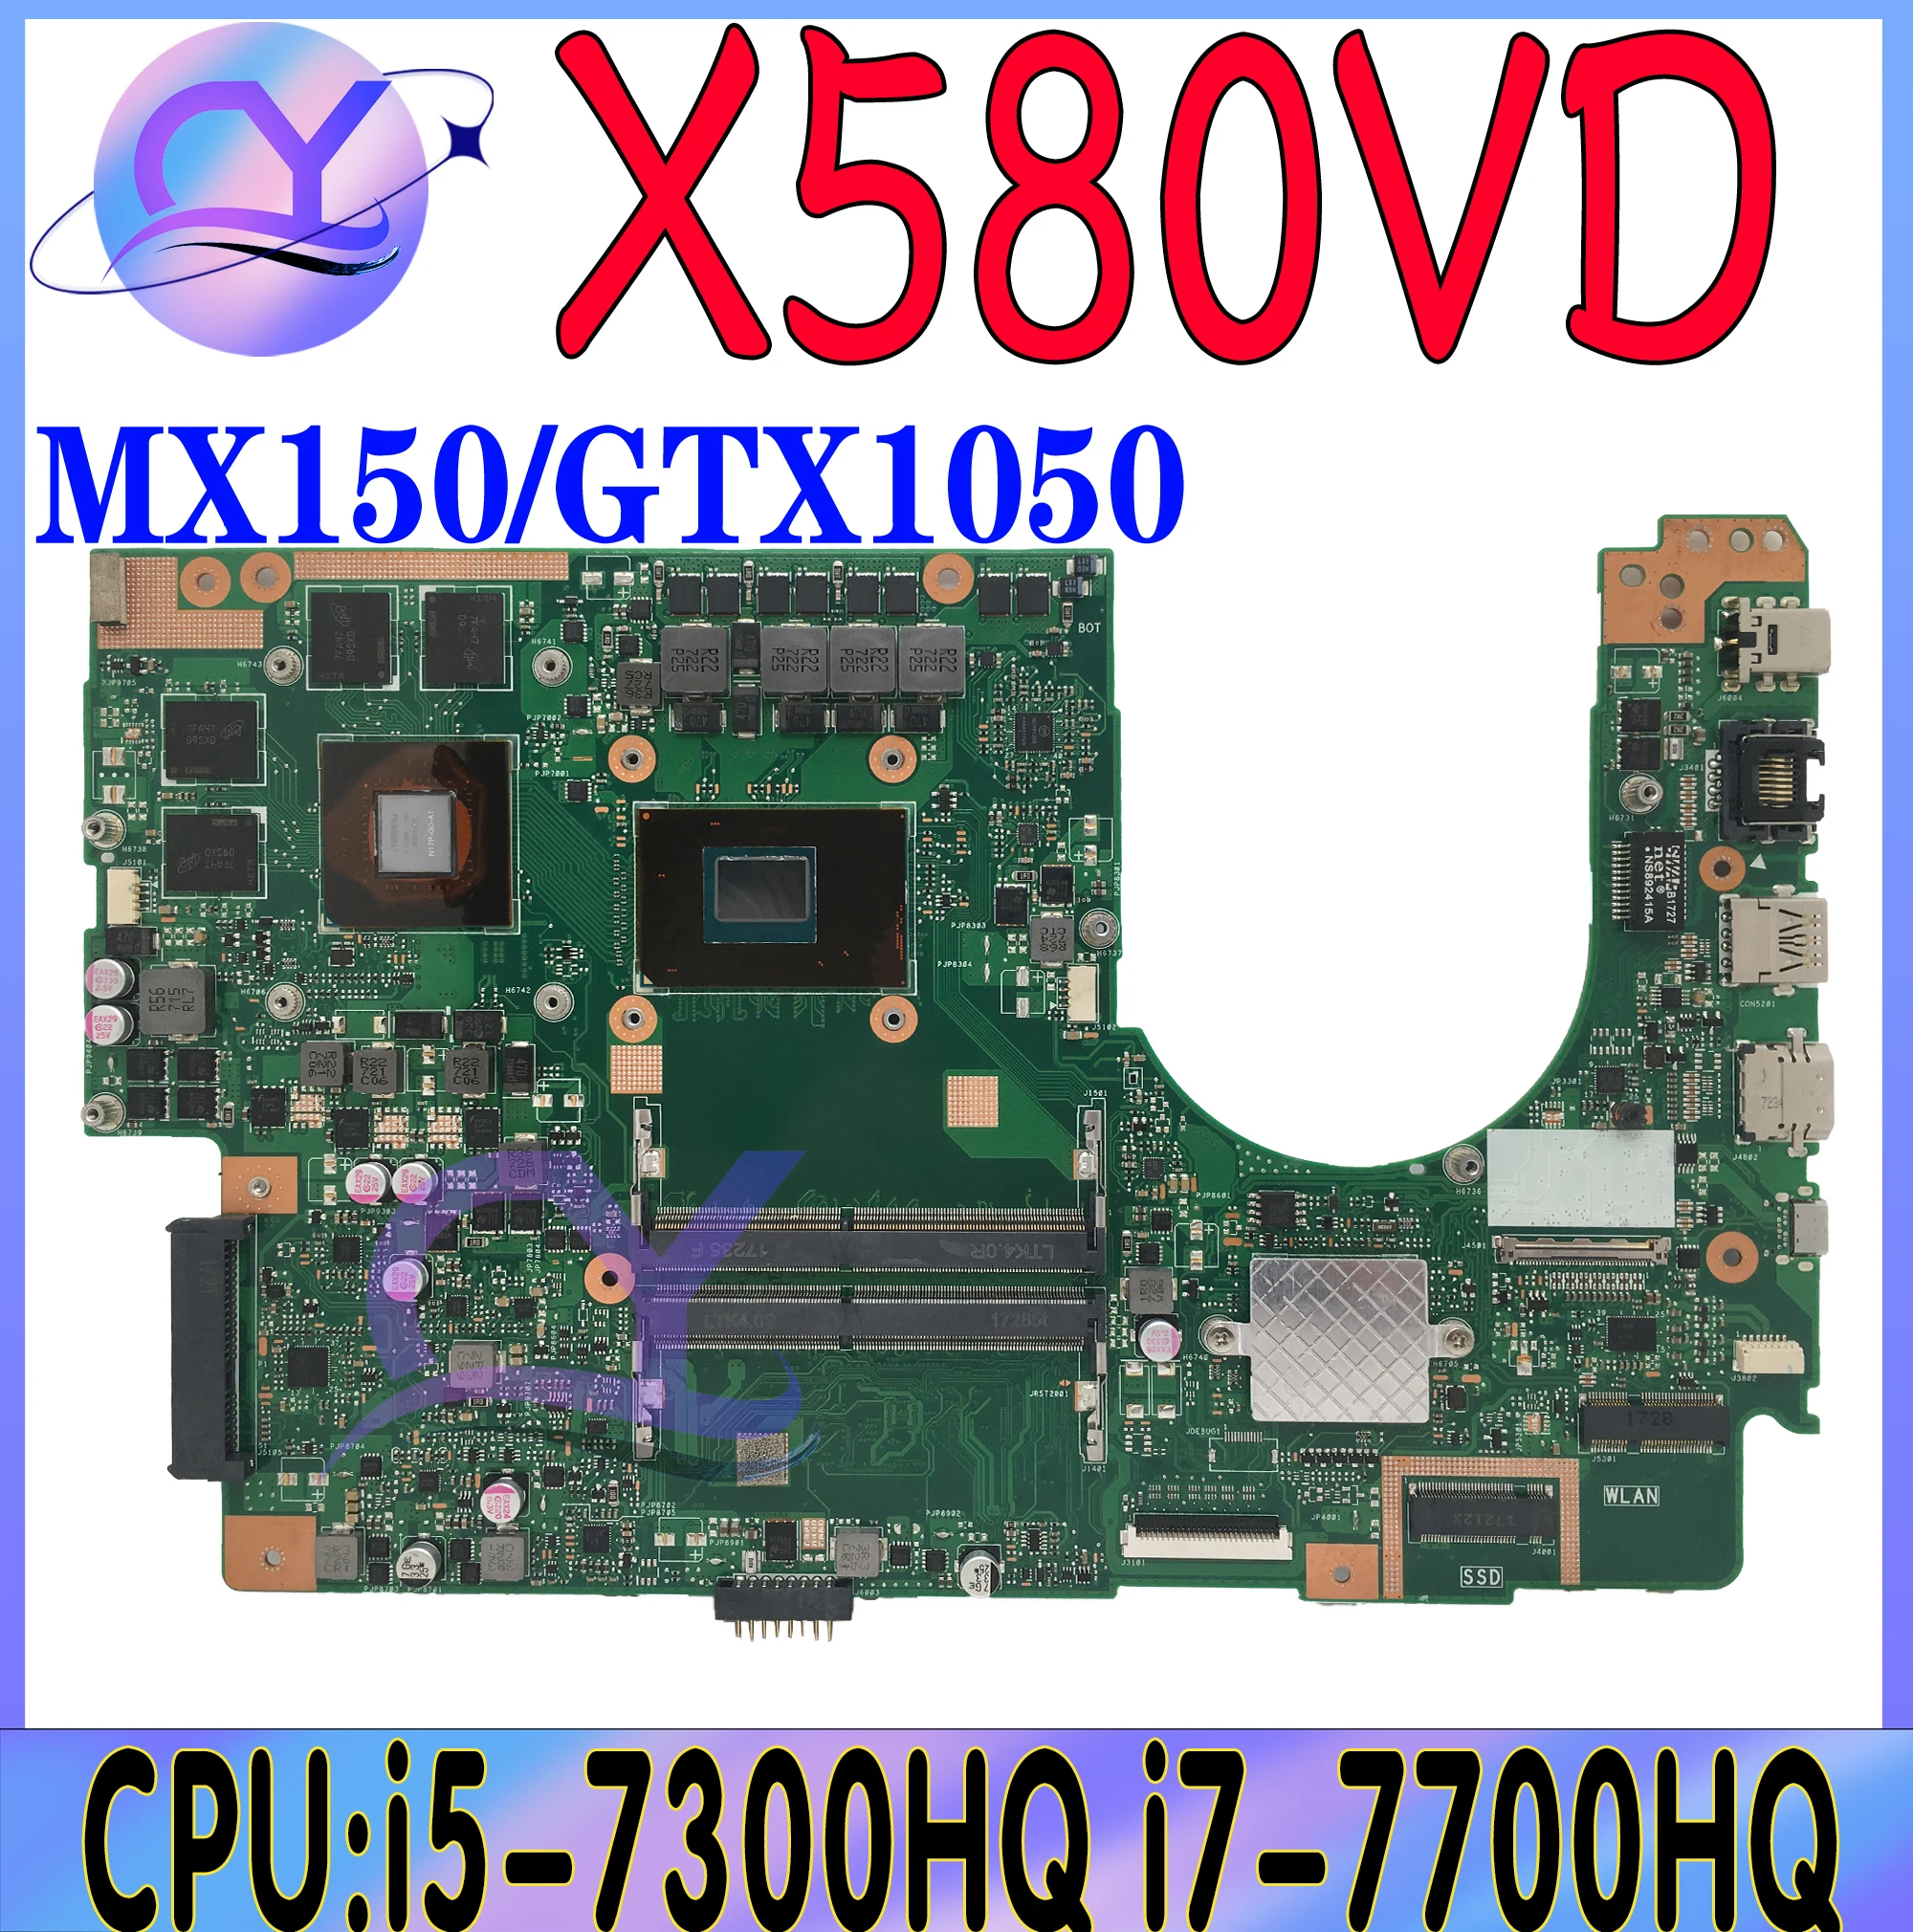 

X580VD Mainboard For ASUS X580 X580V X580VN N580V N580VD Laptop Motherboard i5-7300HQ i7-7700HQ GTX1050 MX150 2G/4GB-GPU DDR4